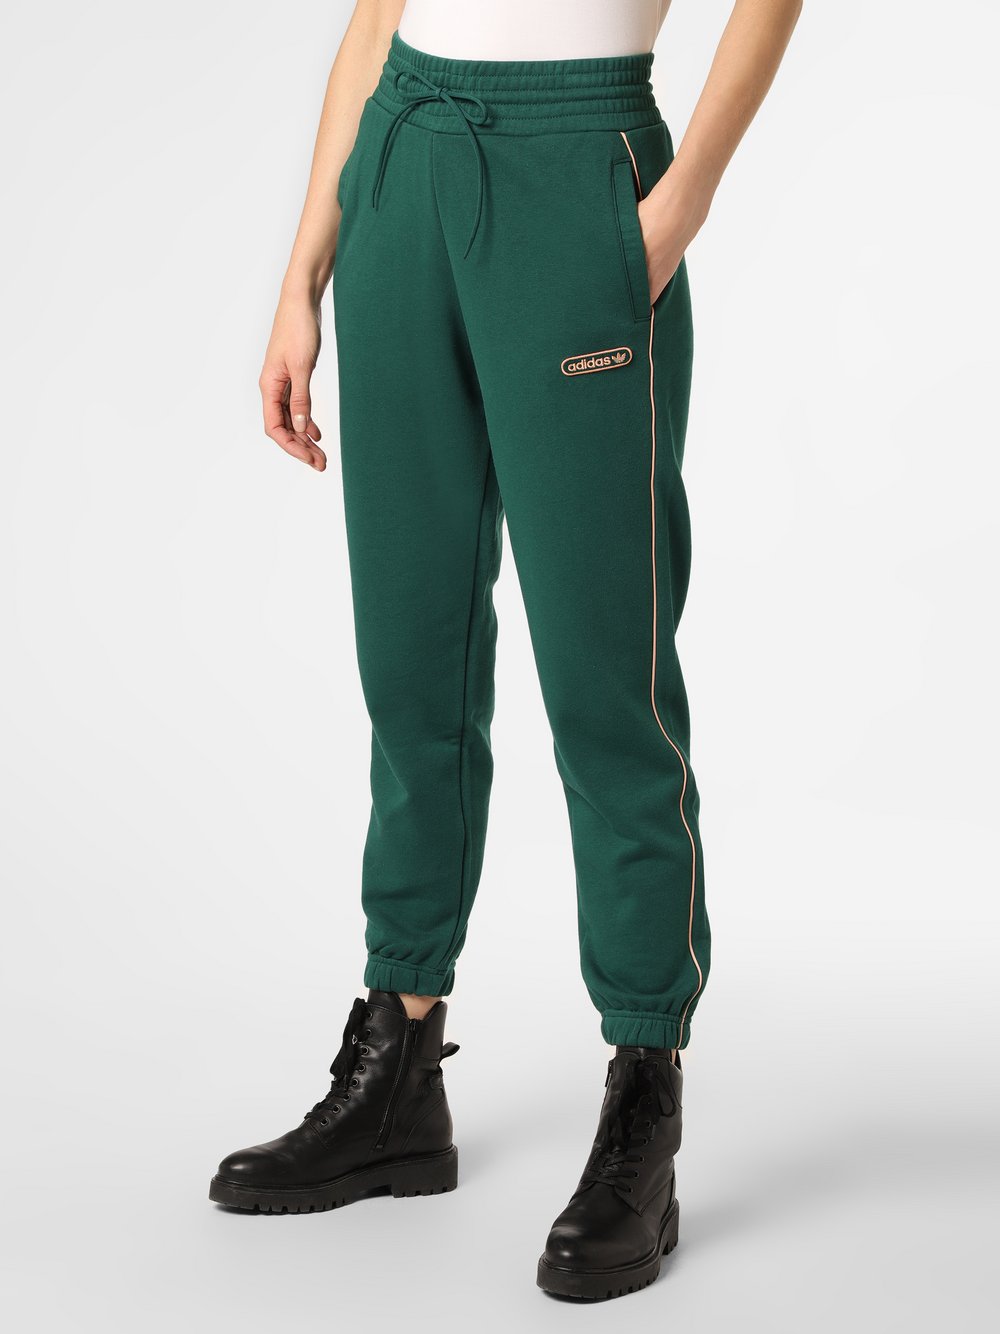 Adidas Originals - Damskie spodnie dresowe, zielony